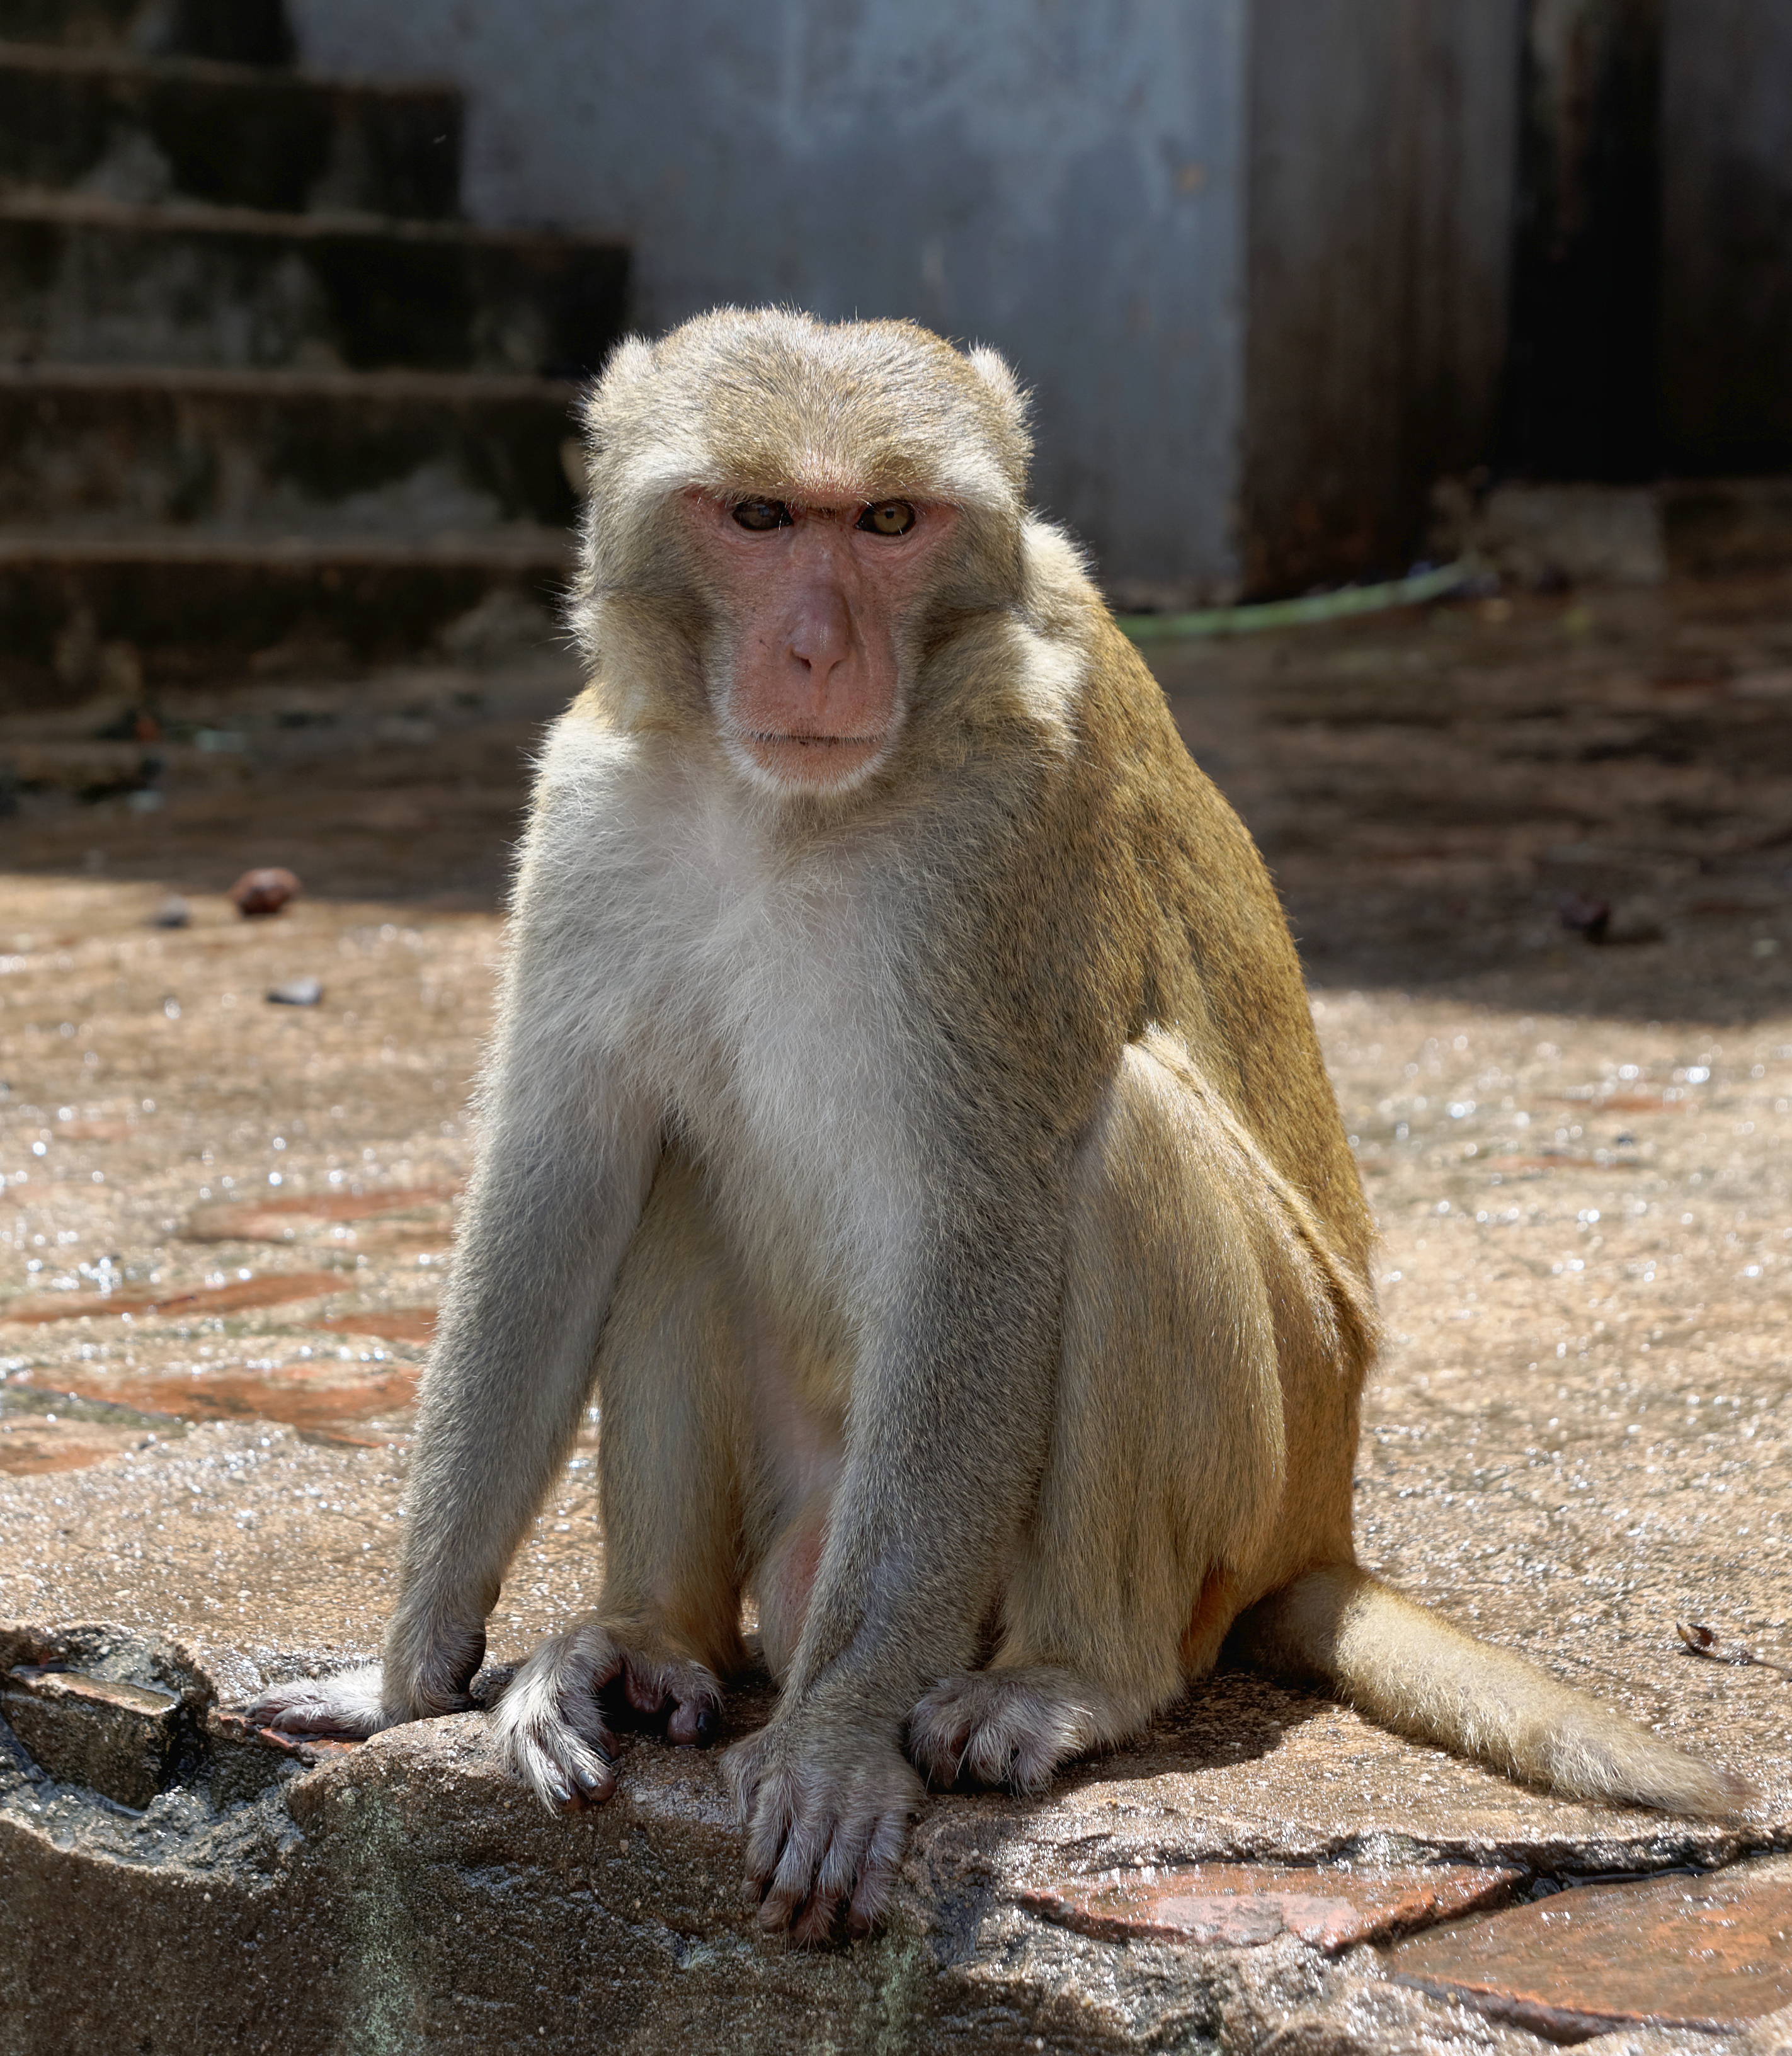 20160802 - Rhesus macaque - Mount Popa, Myanmar - 7179